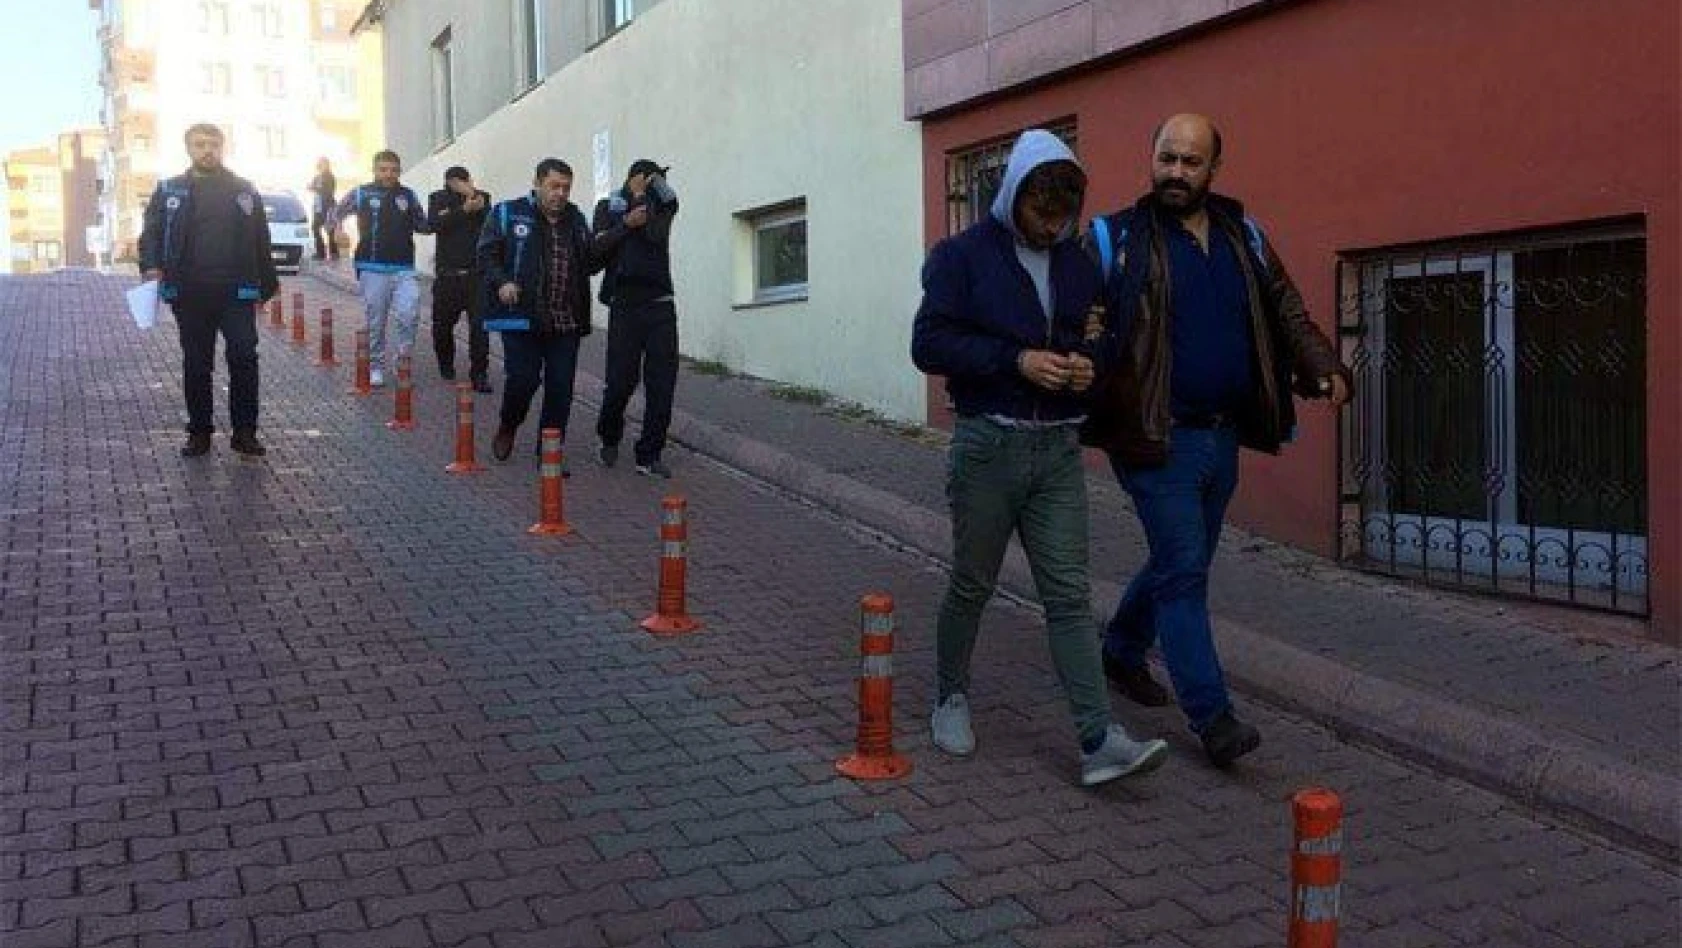 İstanbul'dan gelerek hırsızlık yapan 5 şahıs tutuklandı